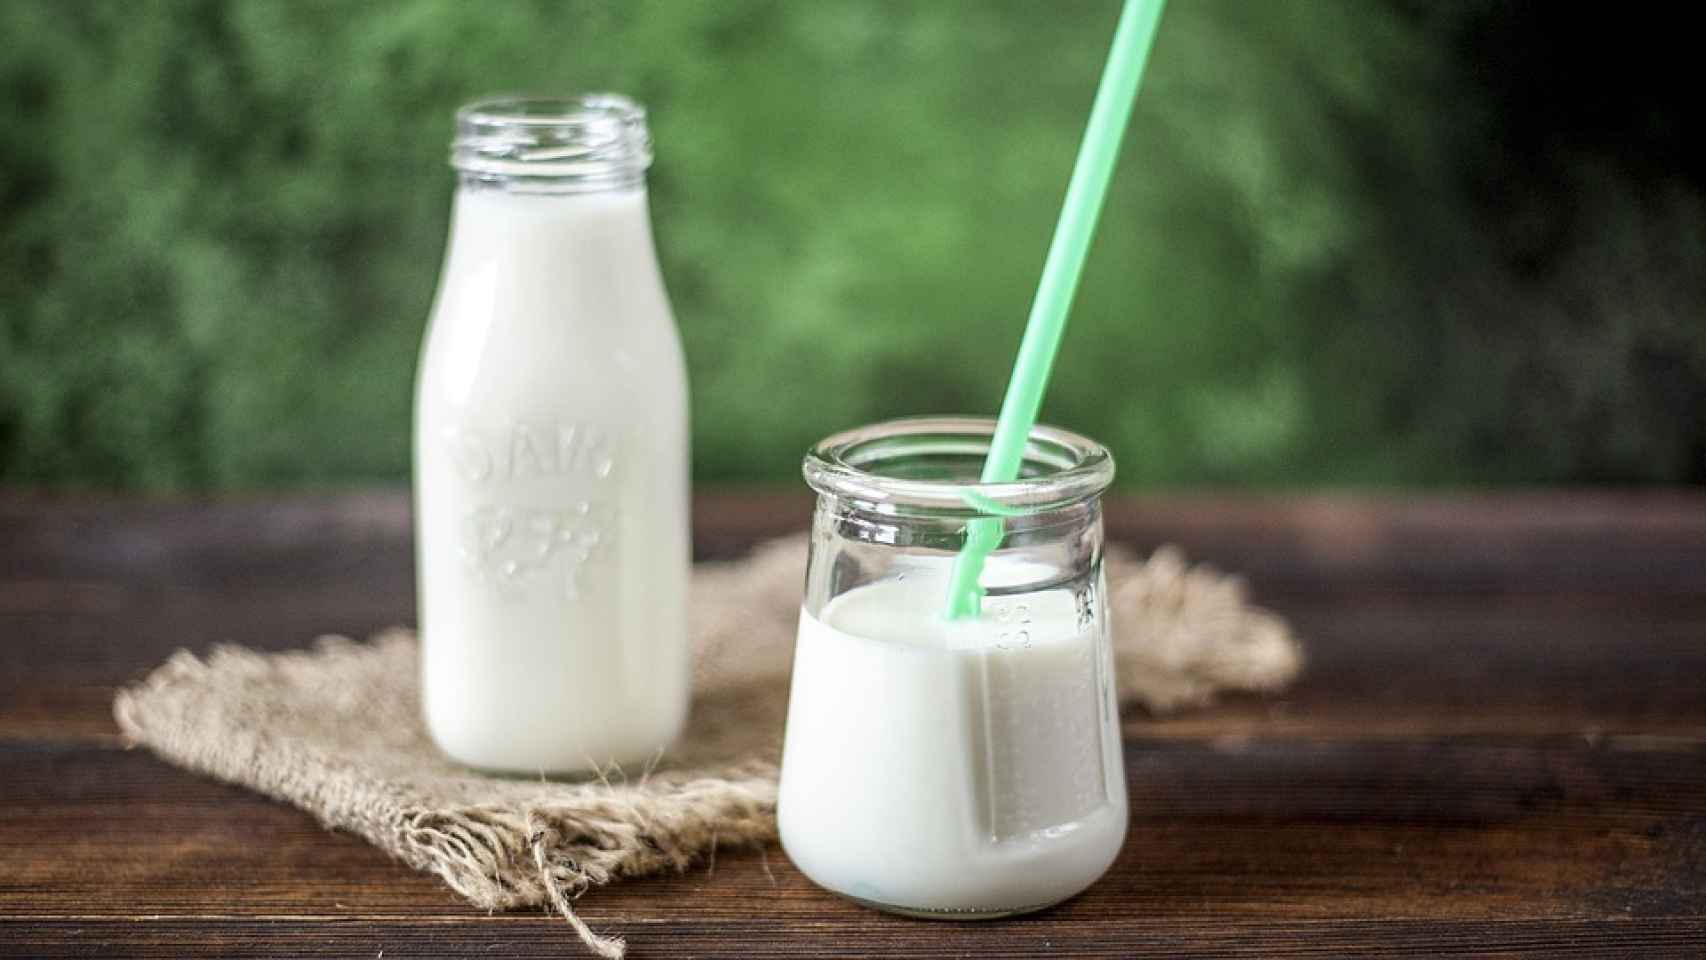 La leche, entera incluso a dieta